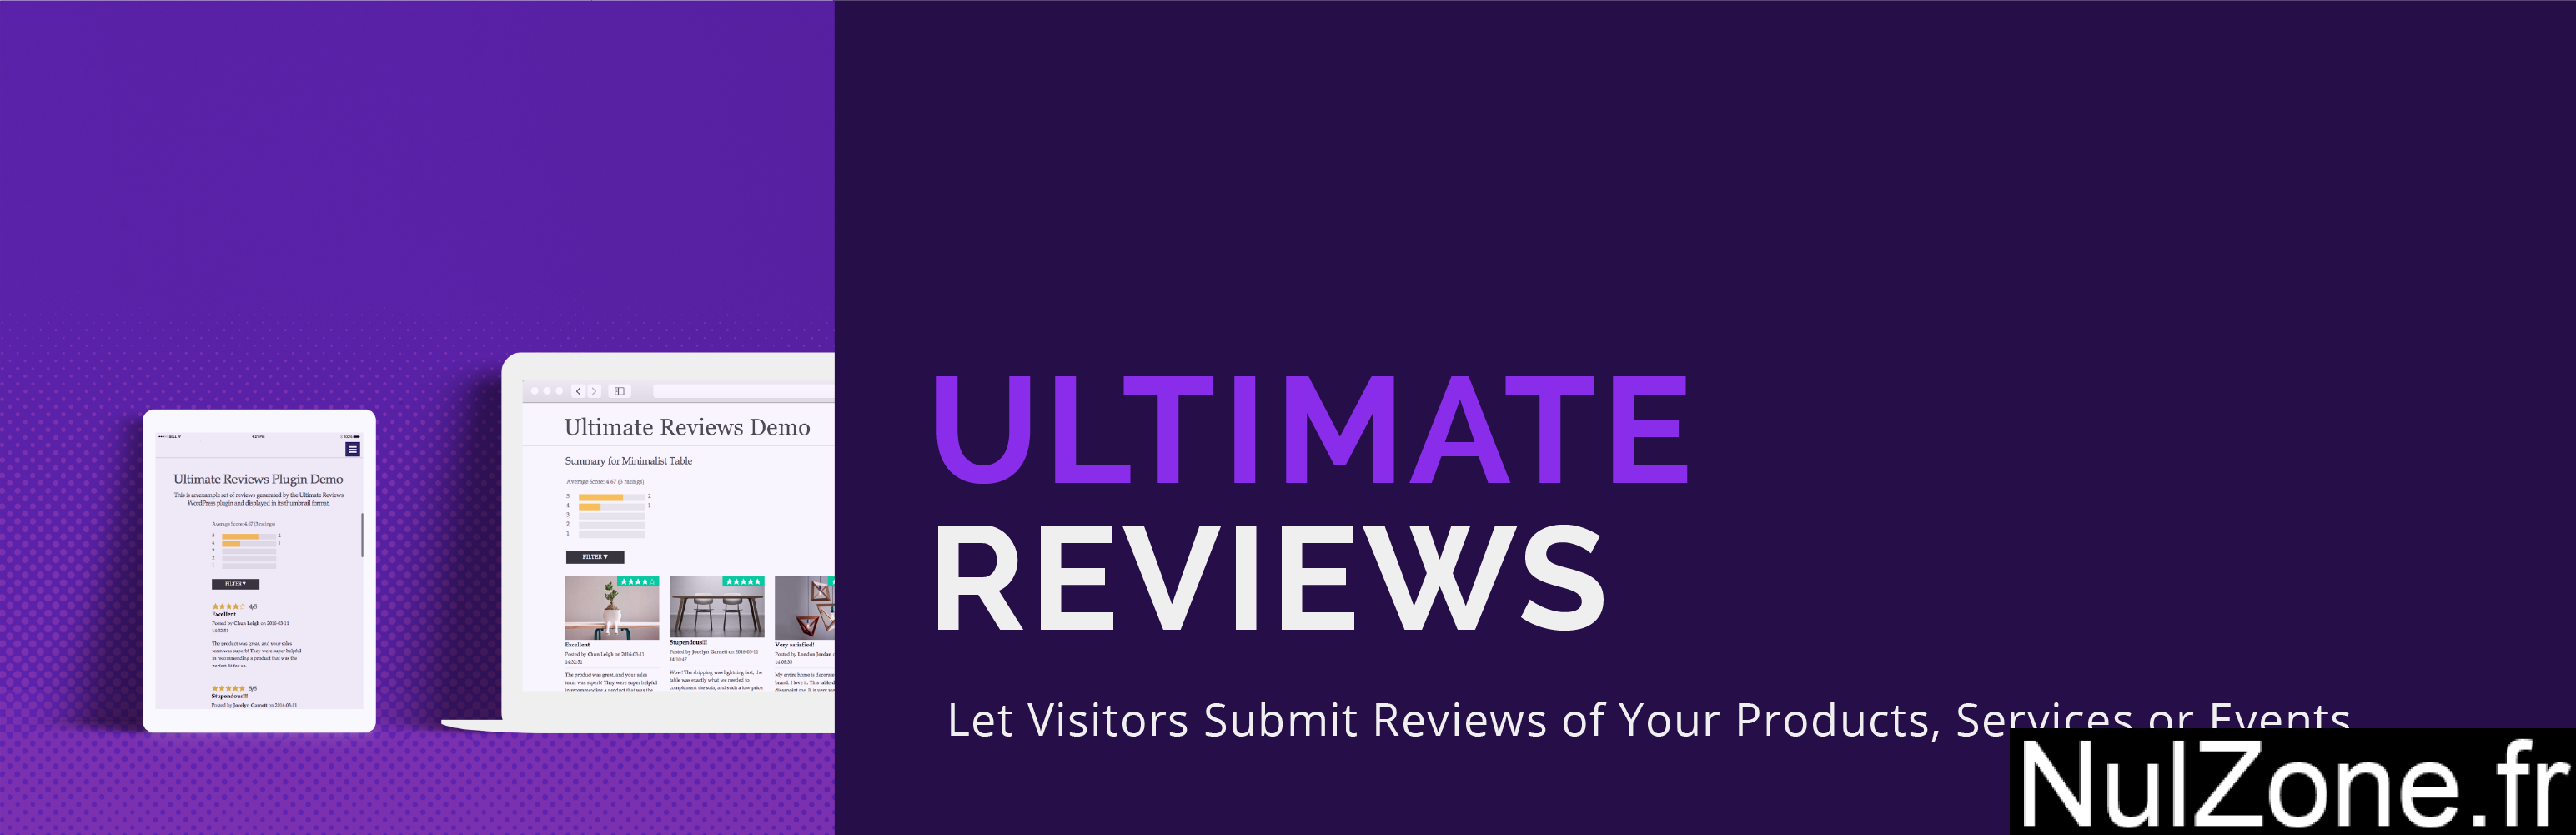 Ultimate Reviews Premium.png